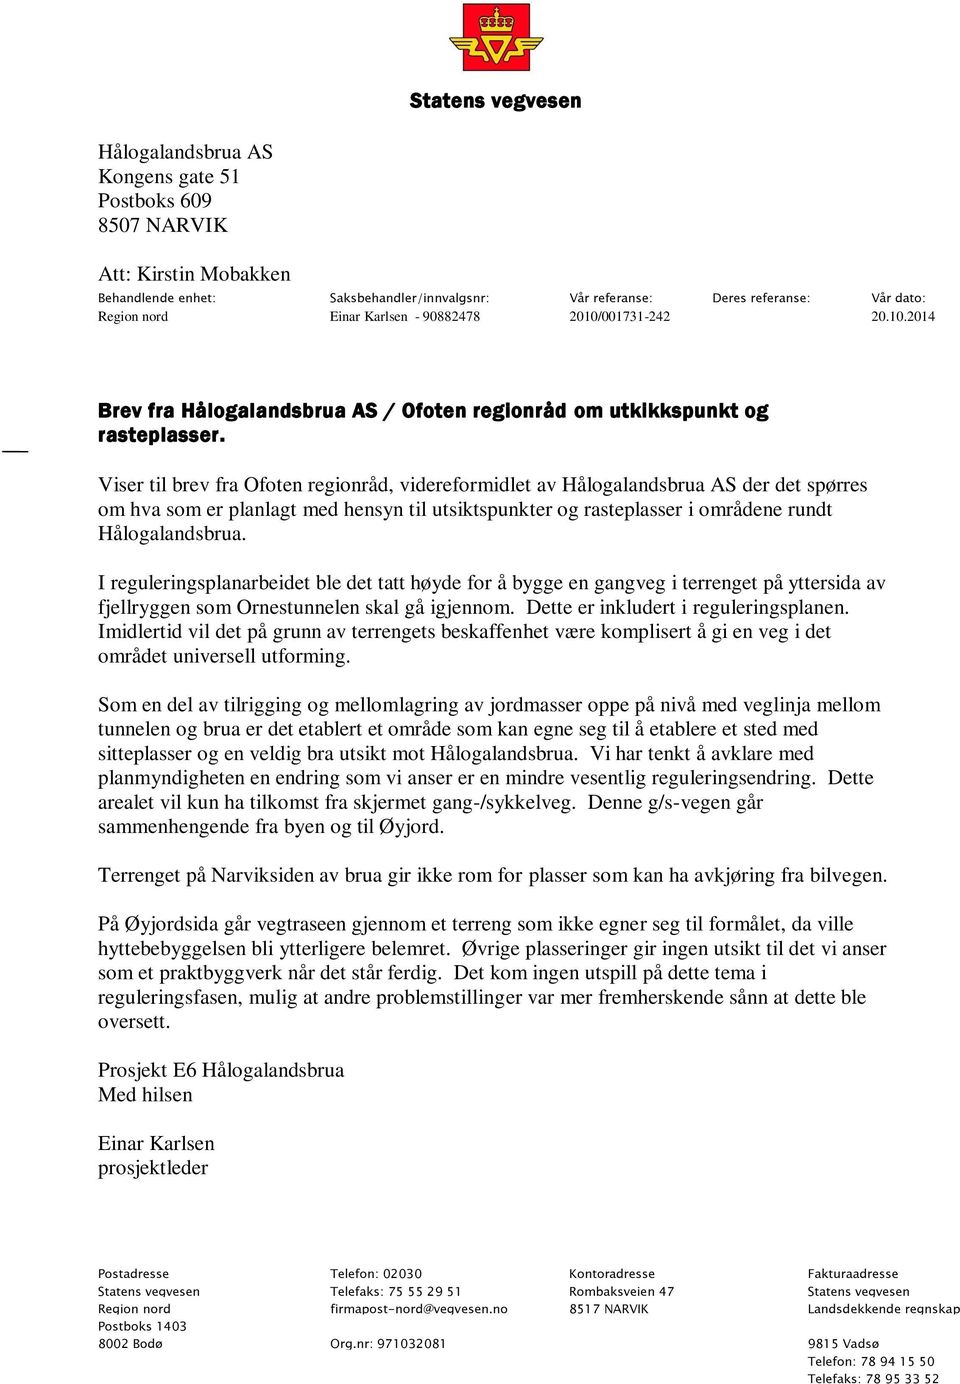 Viser til brev fra Ofoten regionråd, videreformidlet av Hålogalandsbrua AS der det spørres om hva som er planlagt med hensyn til utsiktspunkter og rasteplasser i områdene rundt Hålogalandsbrua.